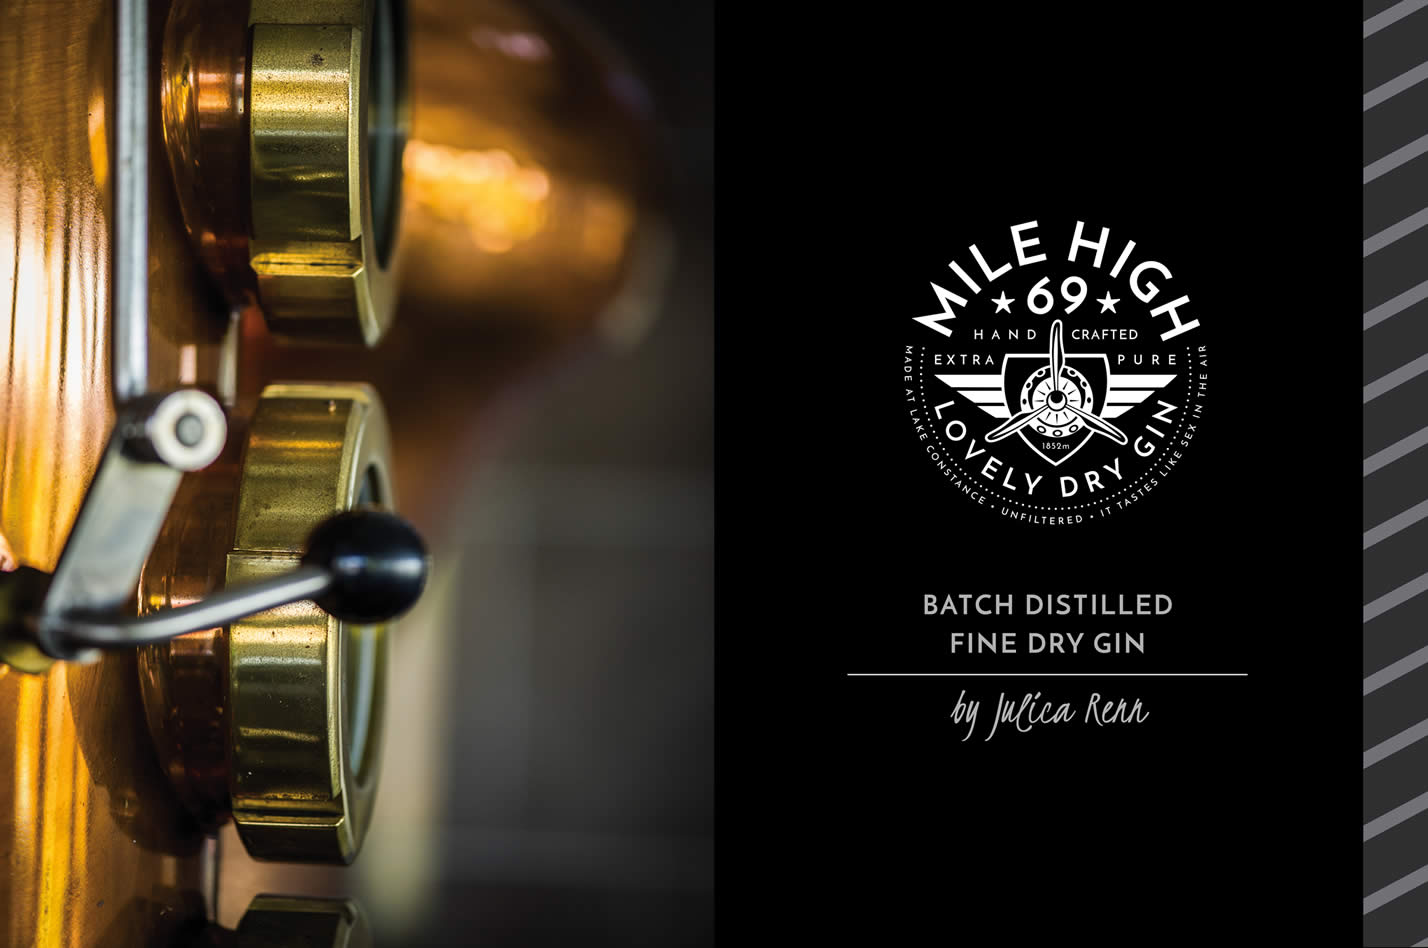 Stimmungsvolles Foto der Mile High 69 Gin Destillerie mit Logo